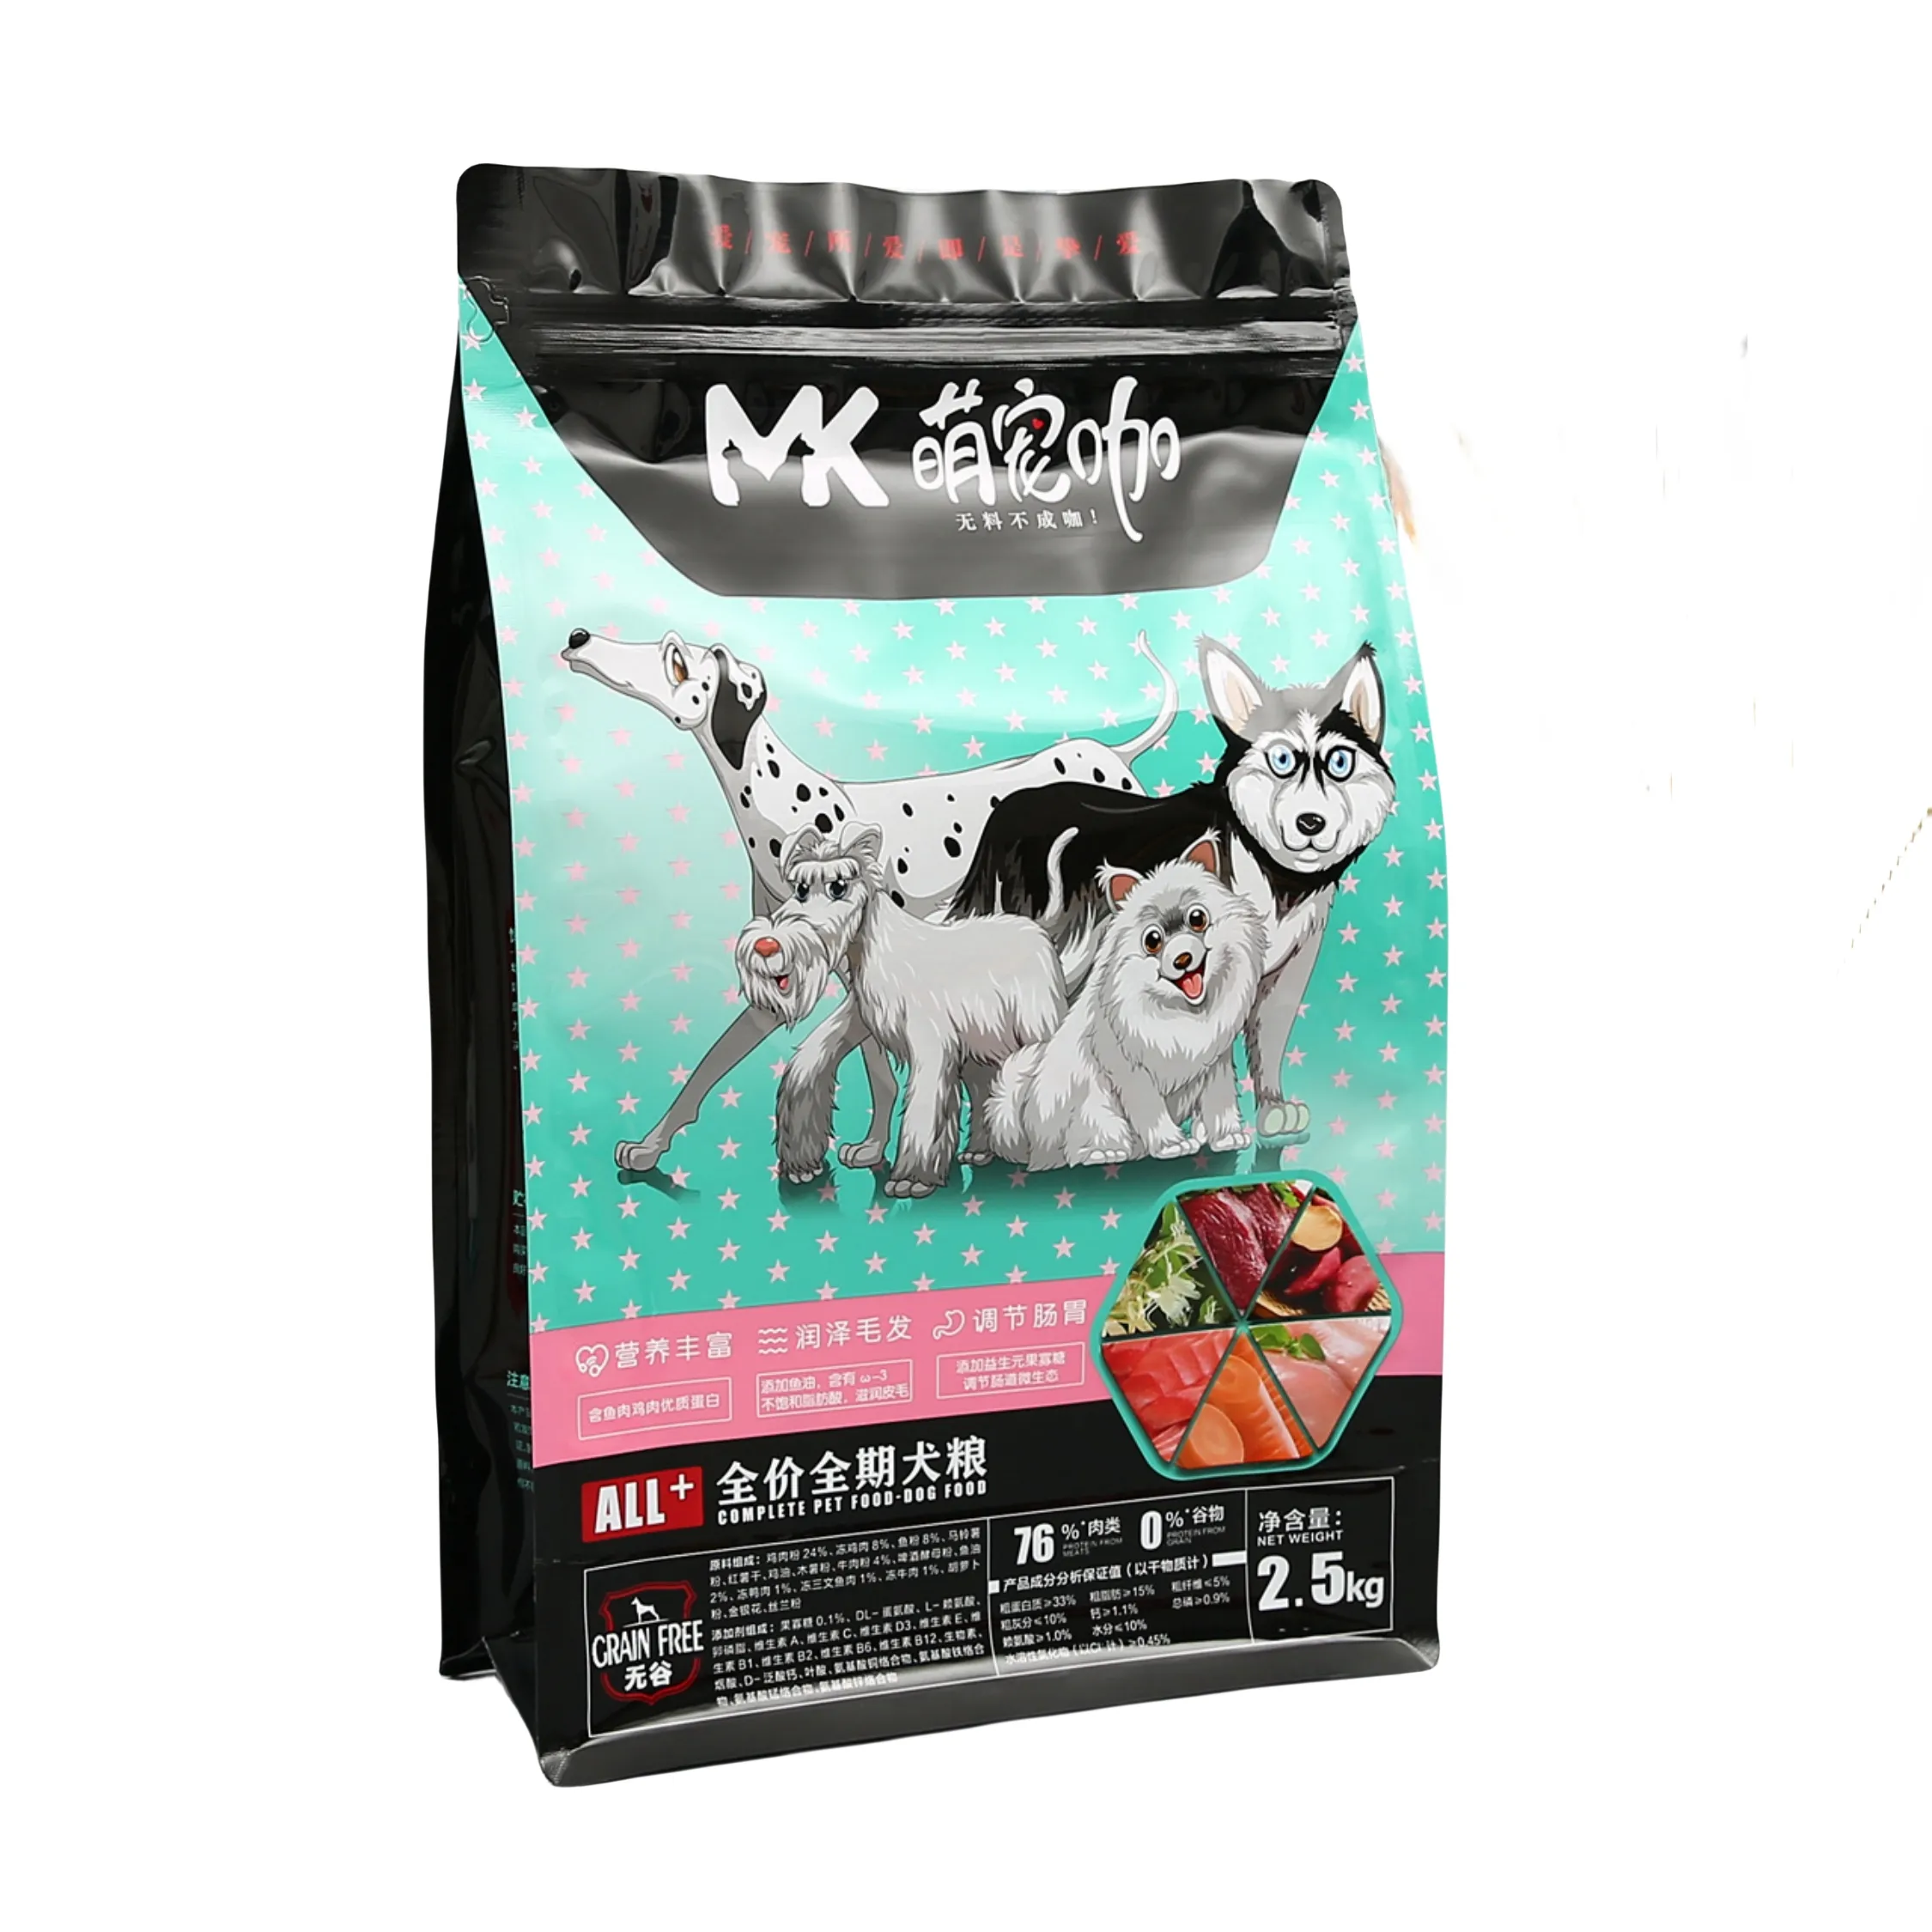 Pet Food Bag Custom printing cat litter 8 side seal bag dog cat pet food packaging square bottom bag